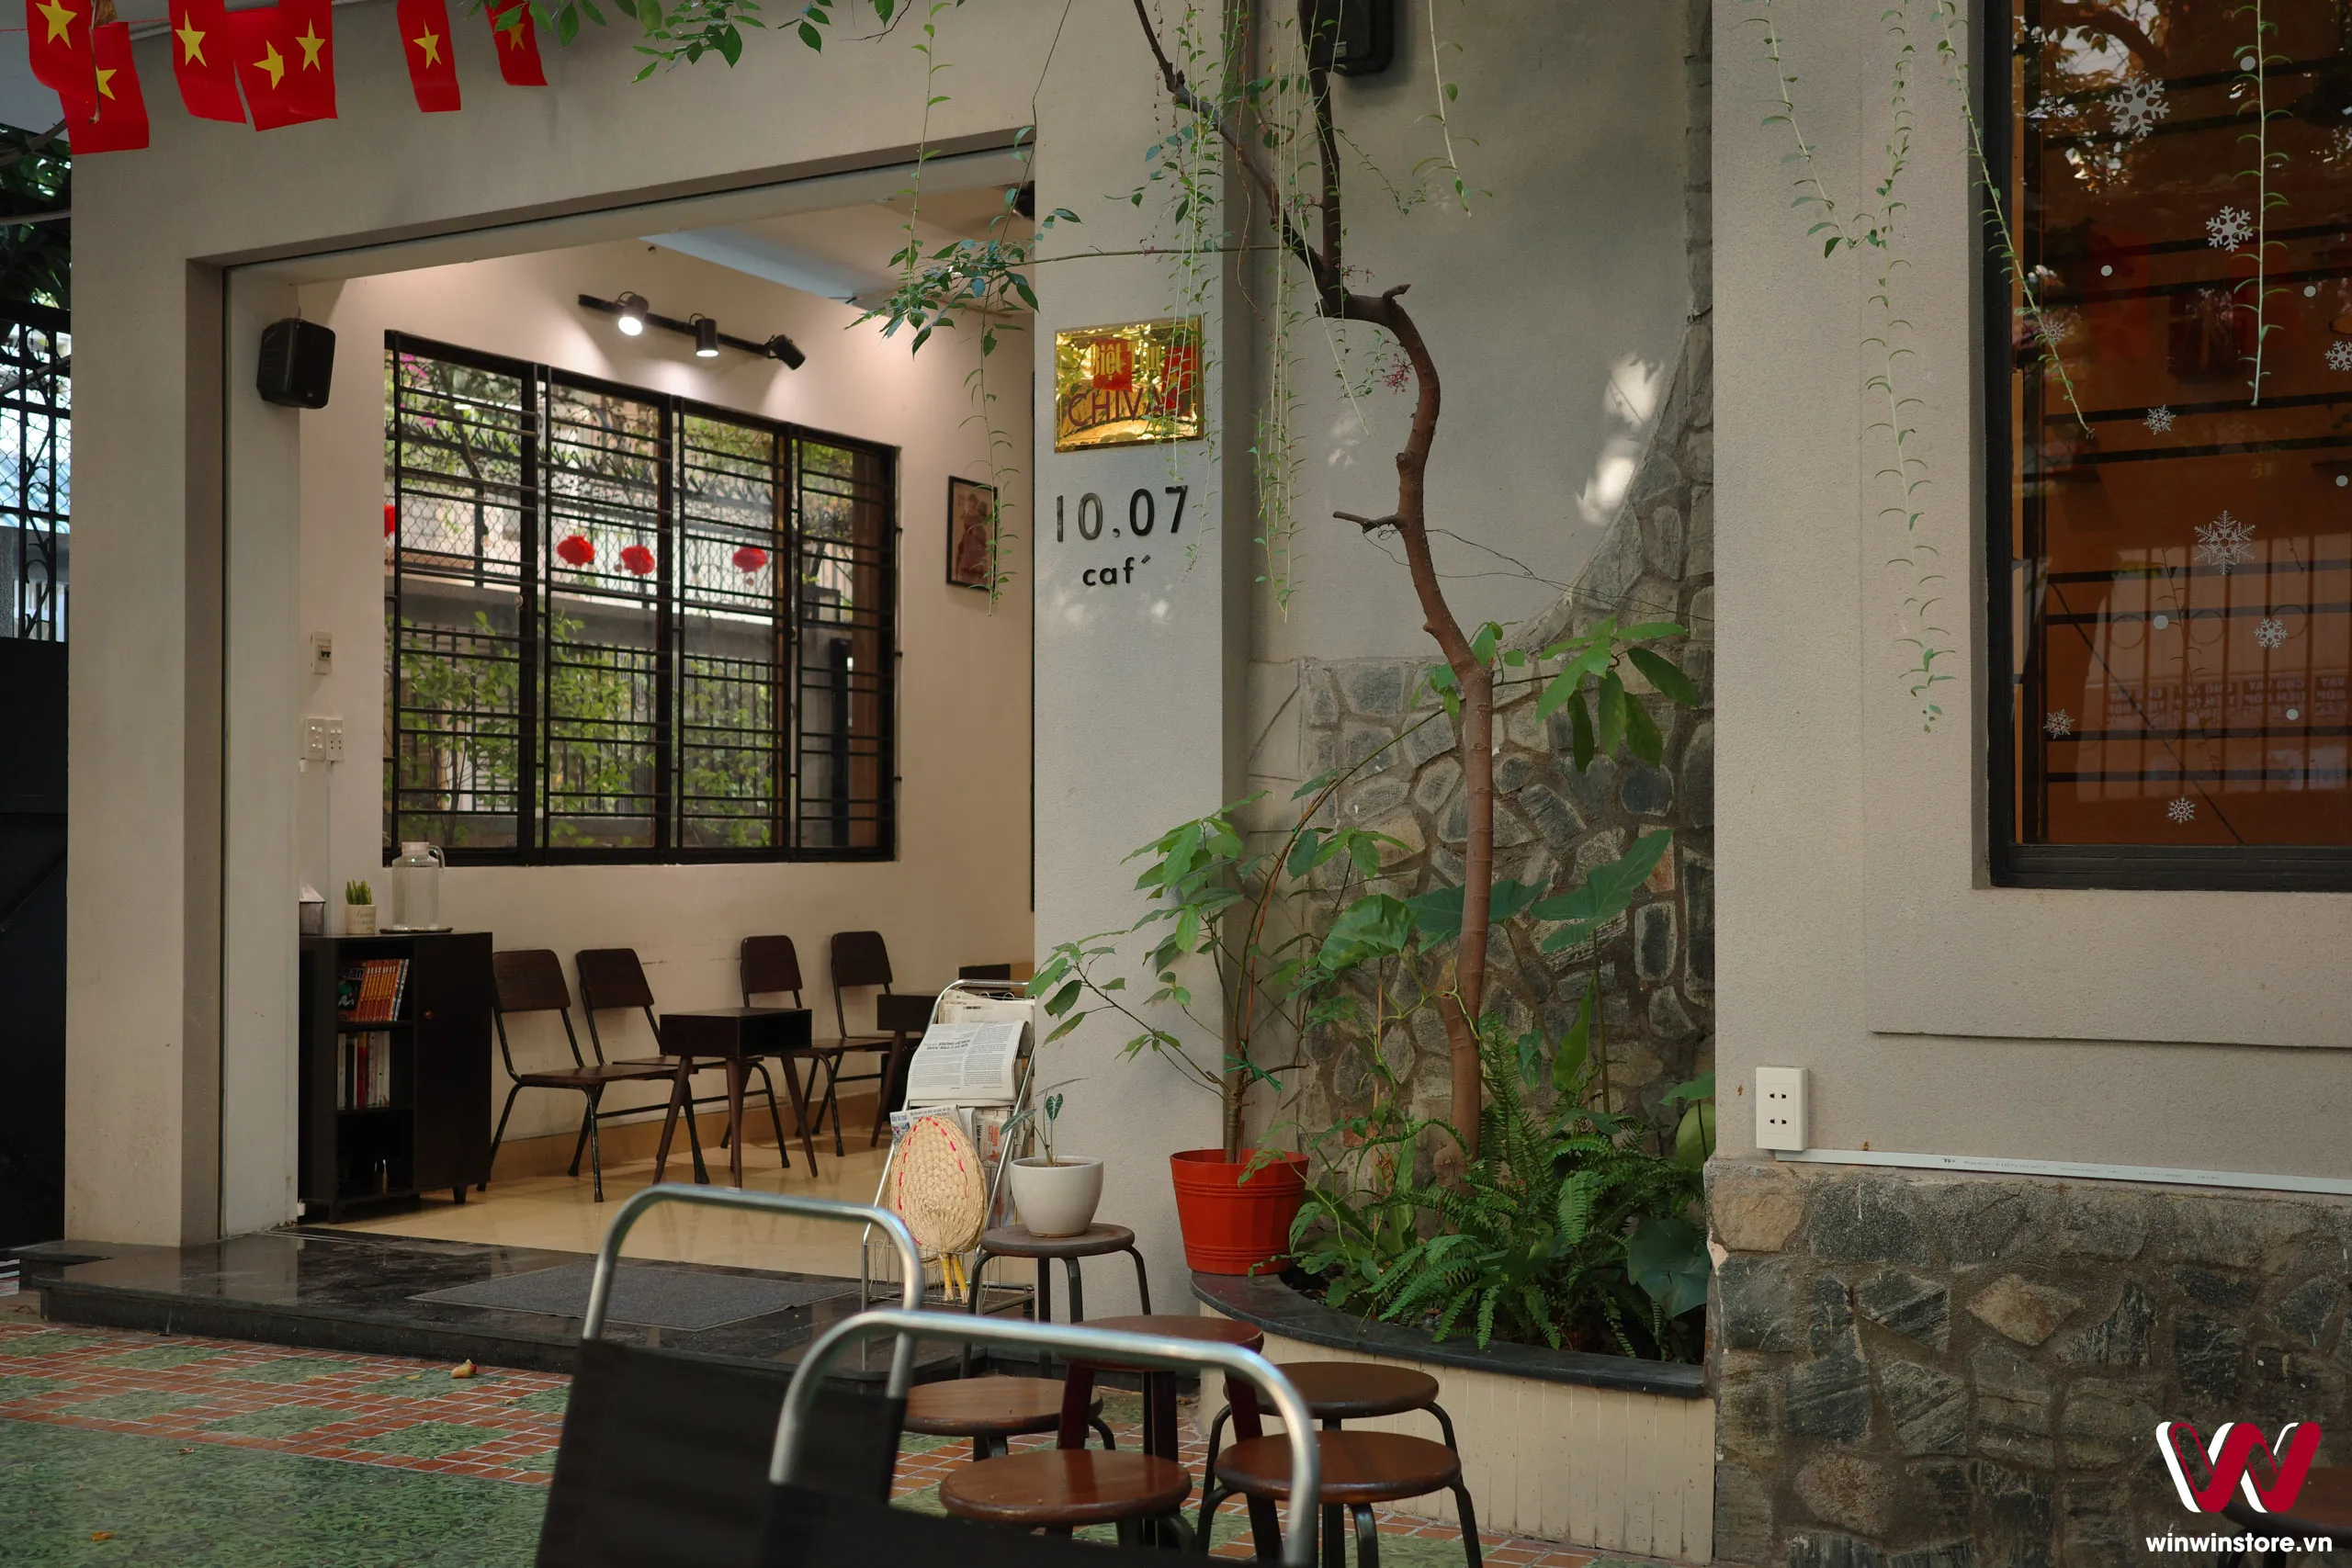 Chia sẻ 3 màu film cho Ricoh GR III/GR IIIx khi chụp cafe, đường phố